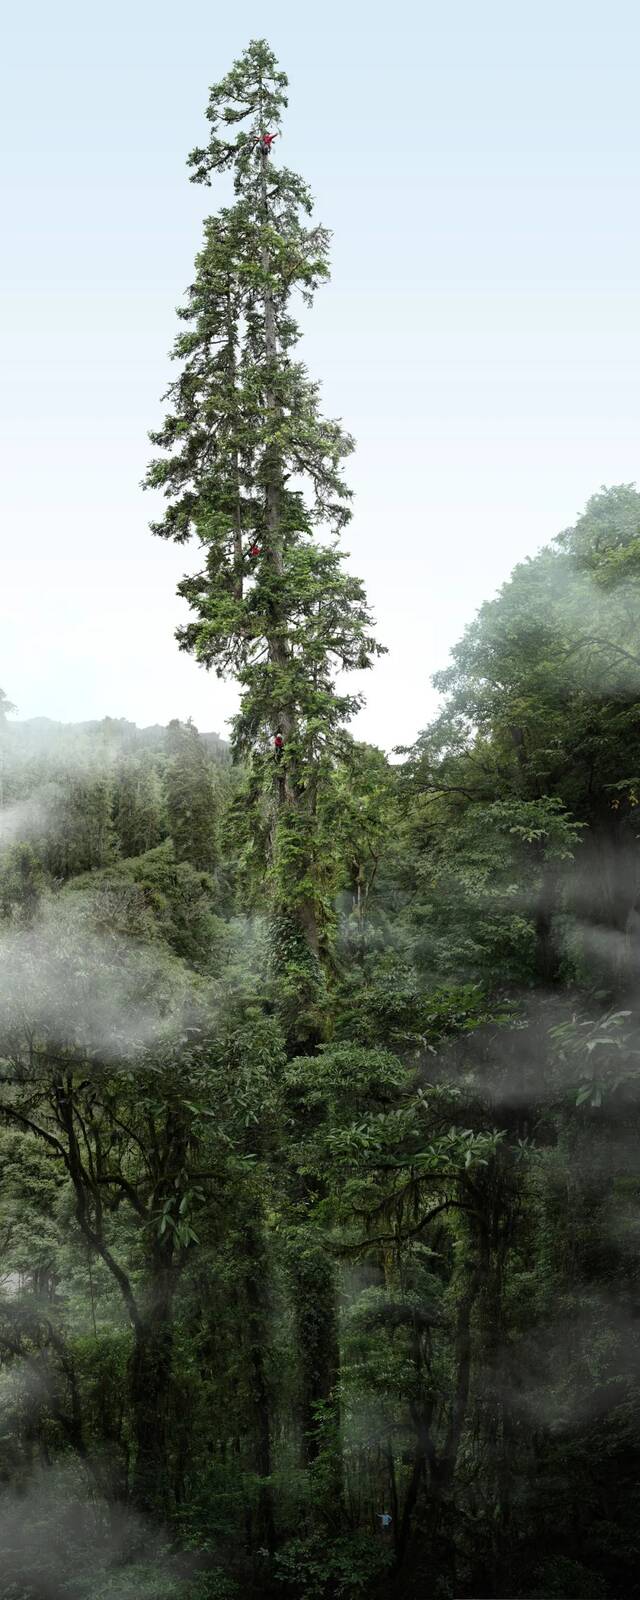 中国巨树云南黄果冷杉等身照，高度83.4米。图源“野性中国”工作室